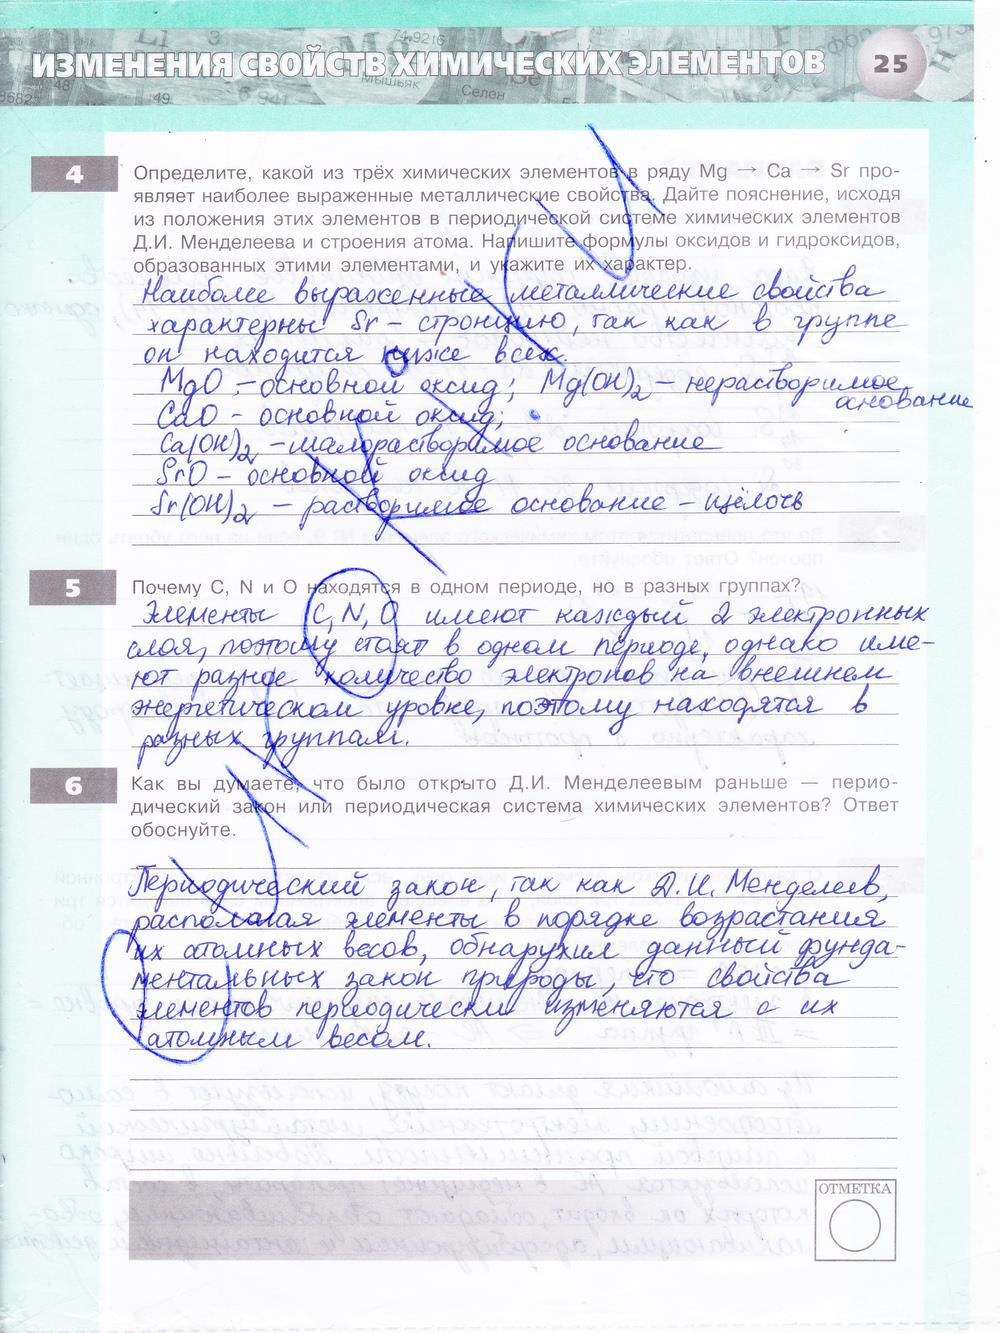 гдз 8 класс тетрадь-экзаменатор страница 25 химия Бобылева, Бирюлина